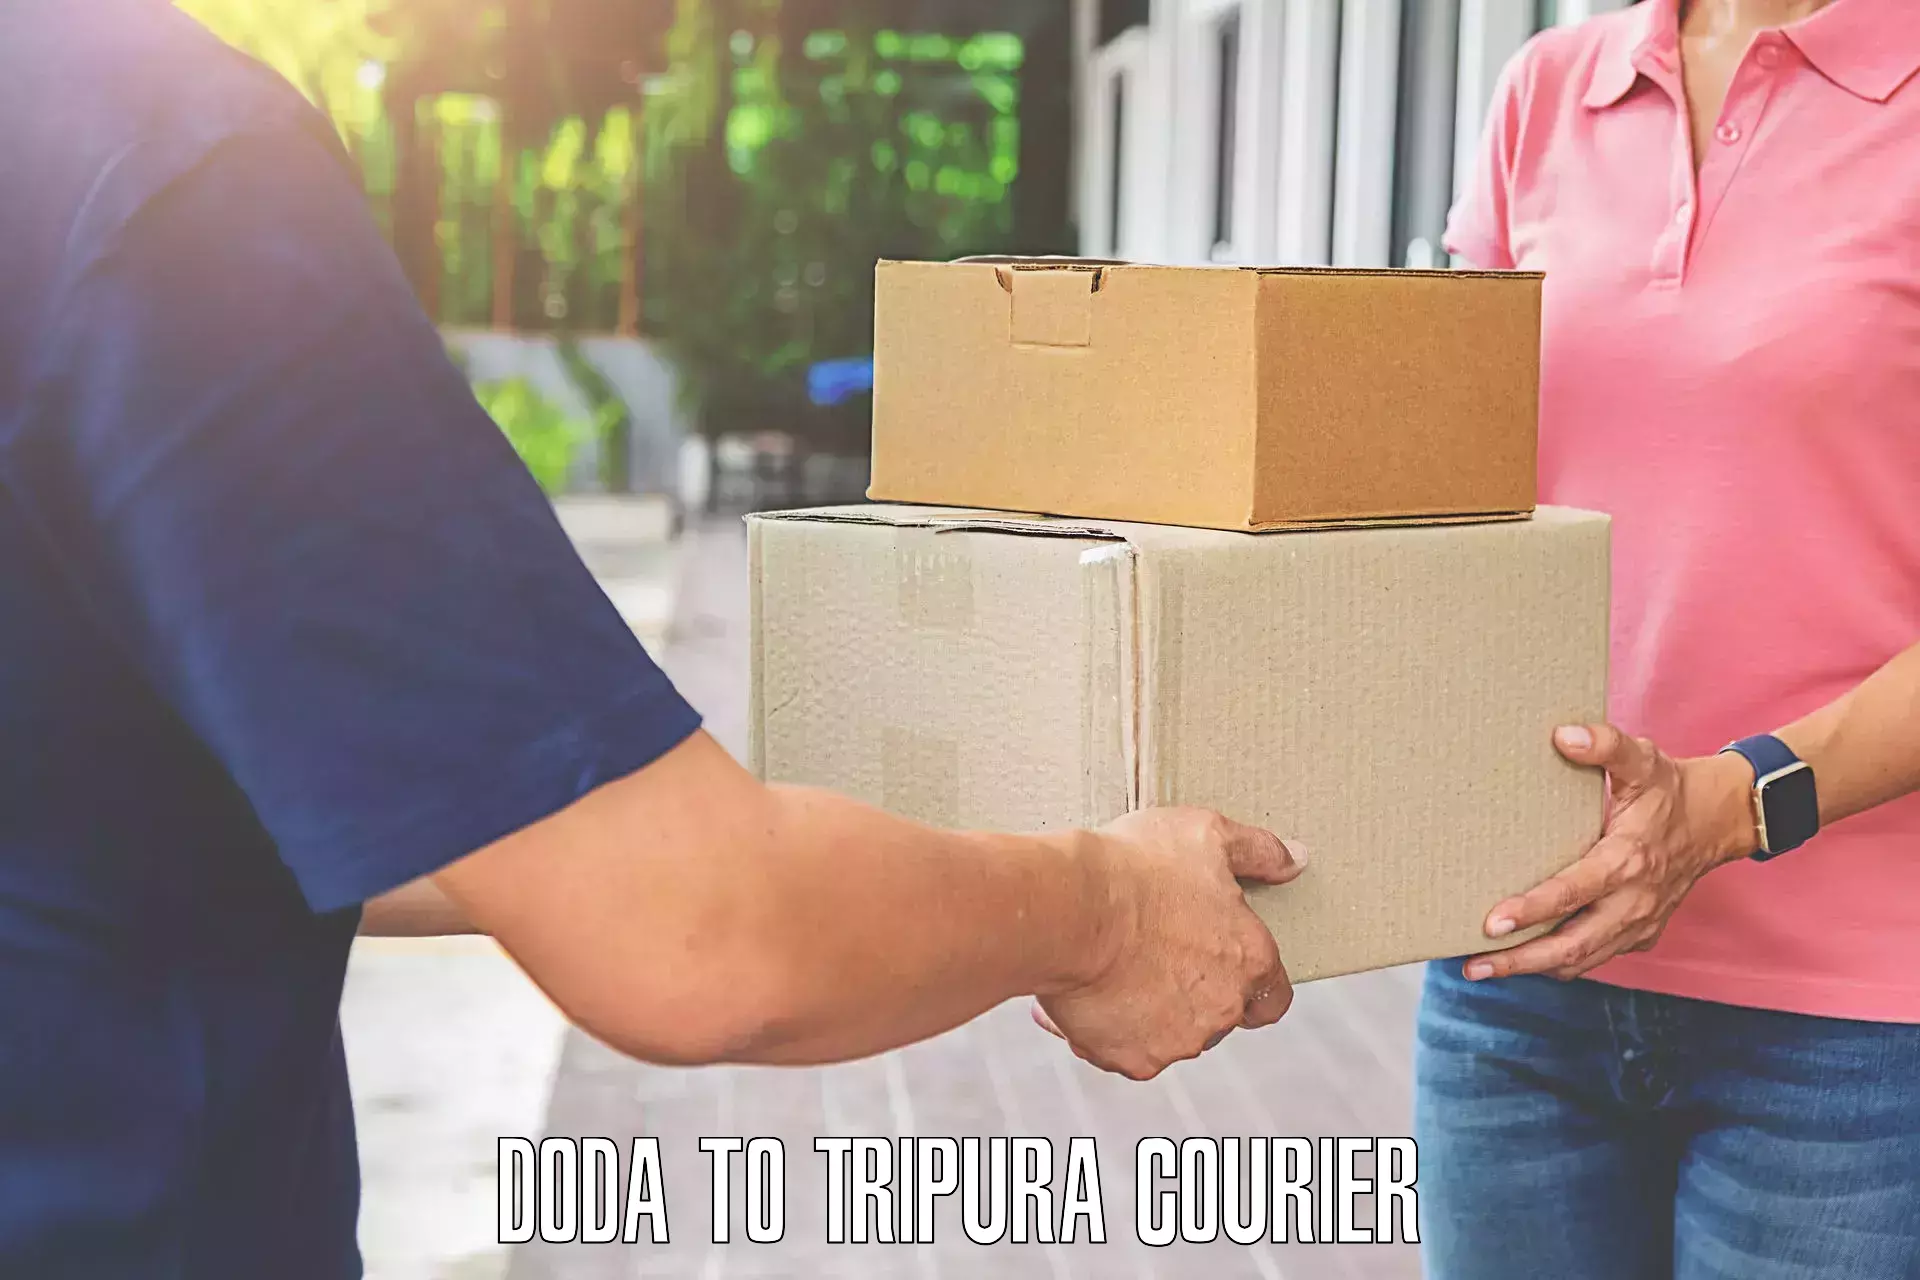 Luggage shipment specialists Doda to Tripura